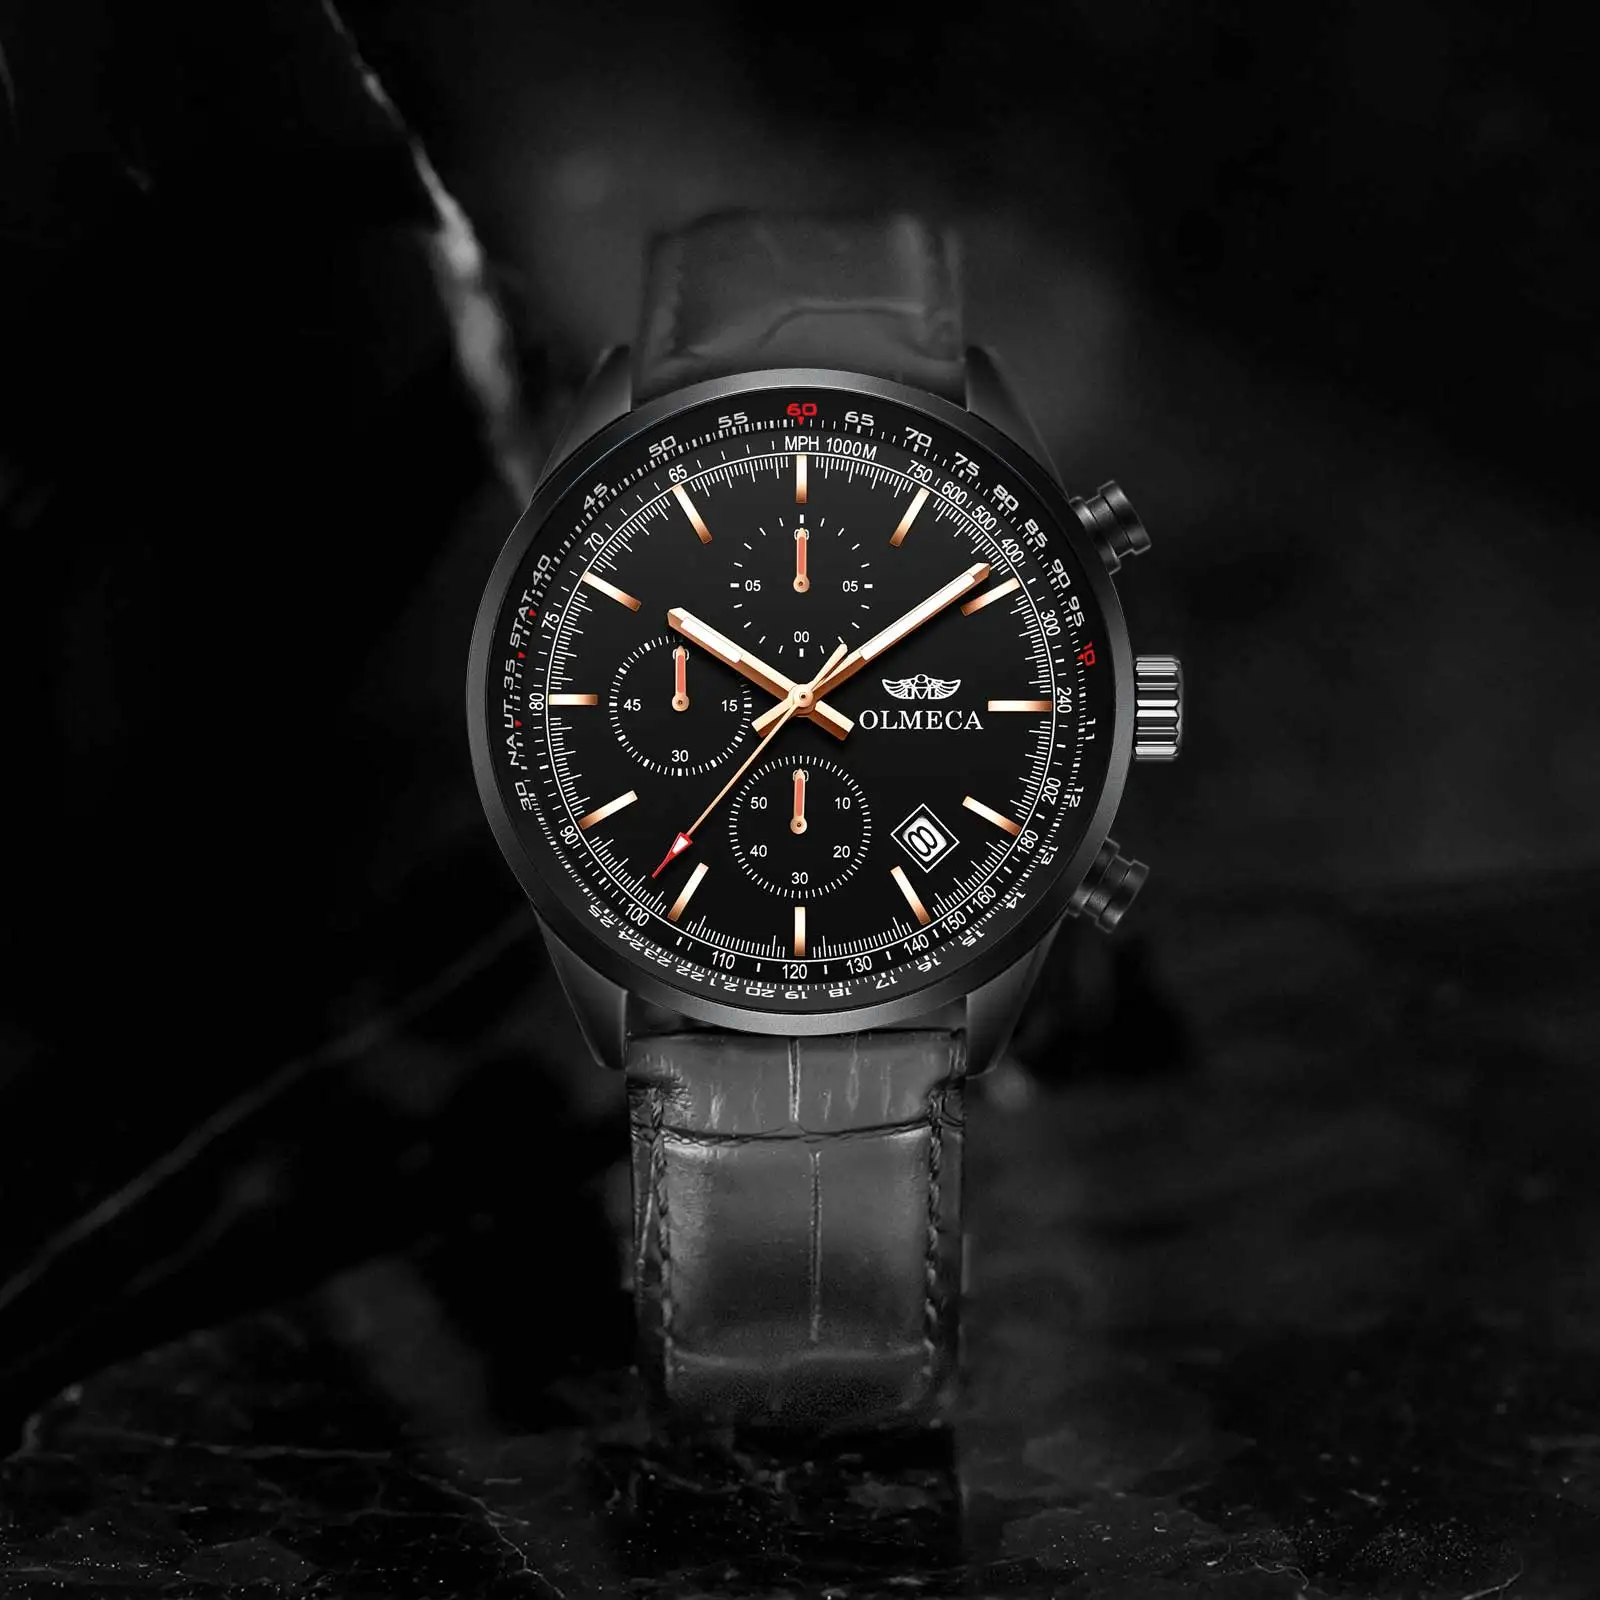 OLMECA мужские часы Топ бренд Роскошные спортивные военные водонепроницаемые часы наручные часы оздоровительный Германий каменные часы для мужчин и женщин